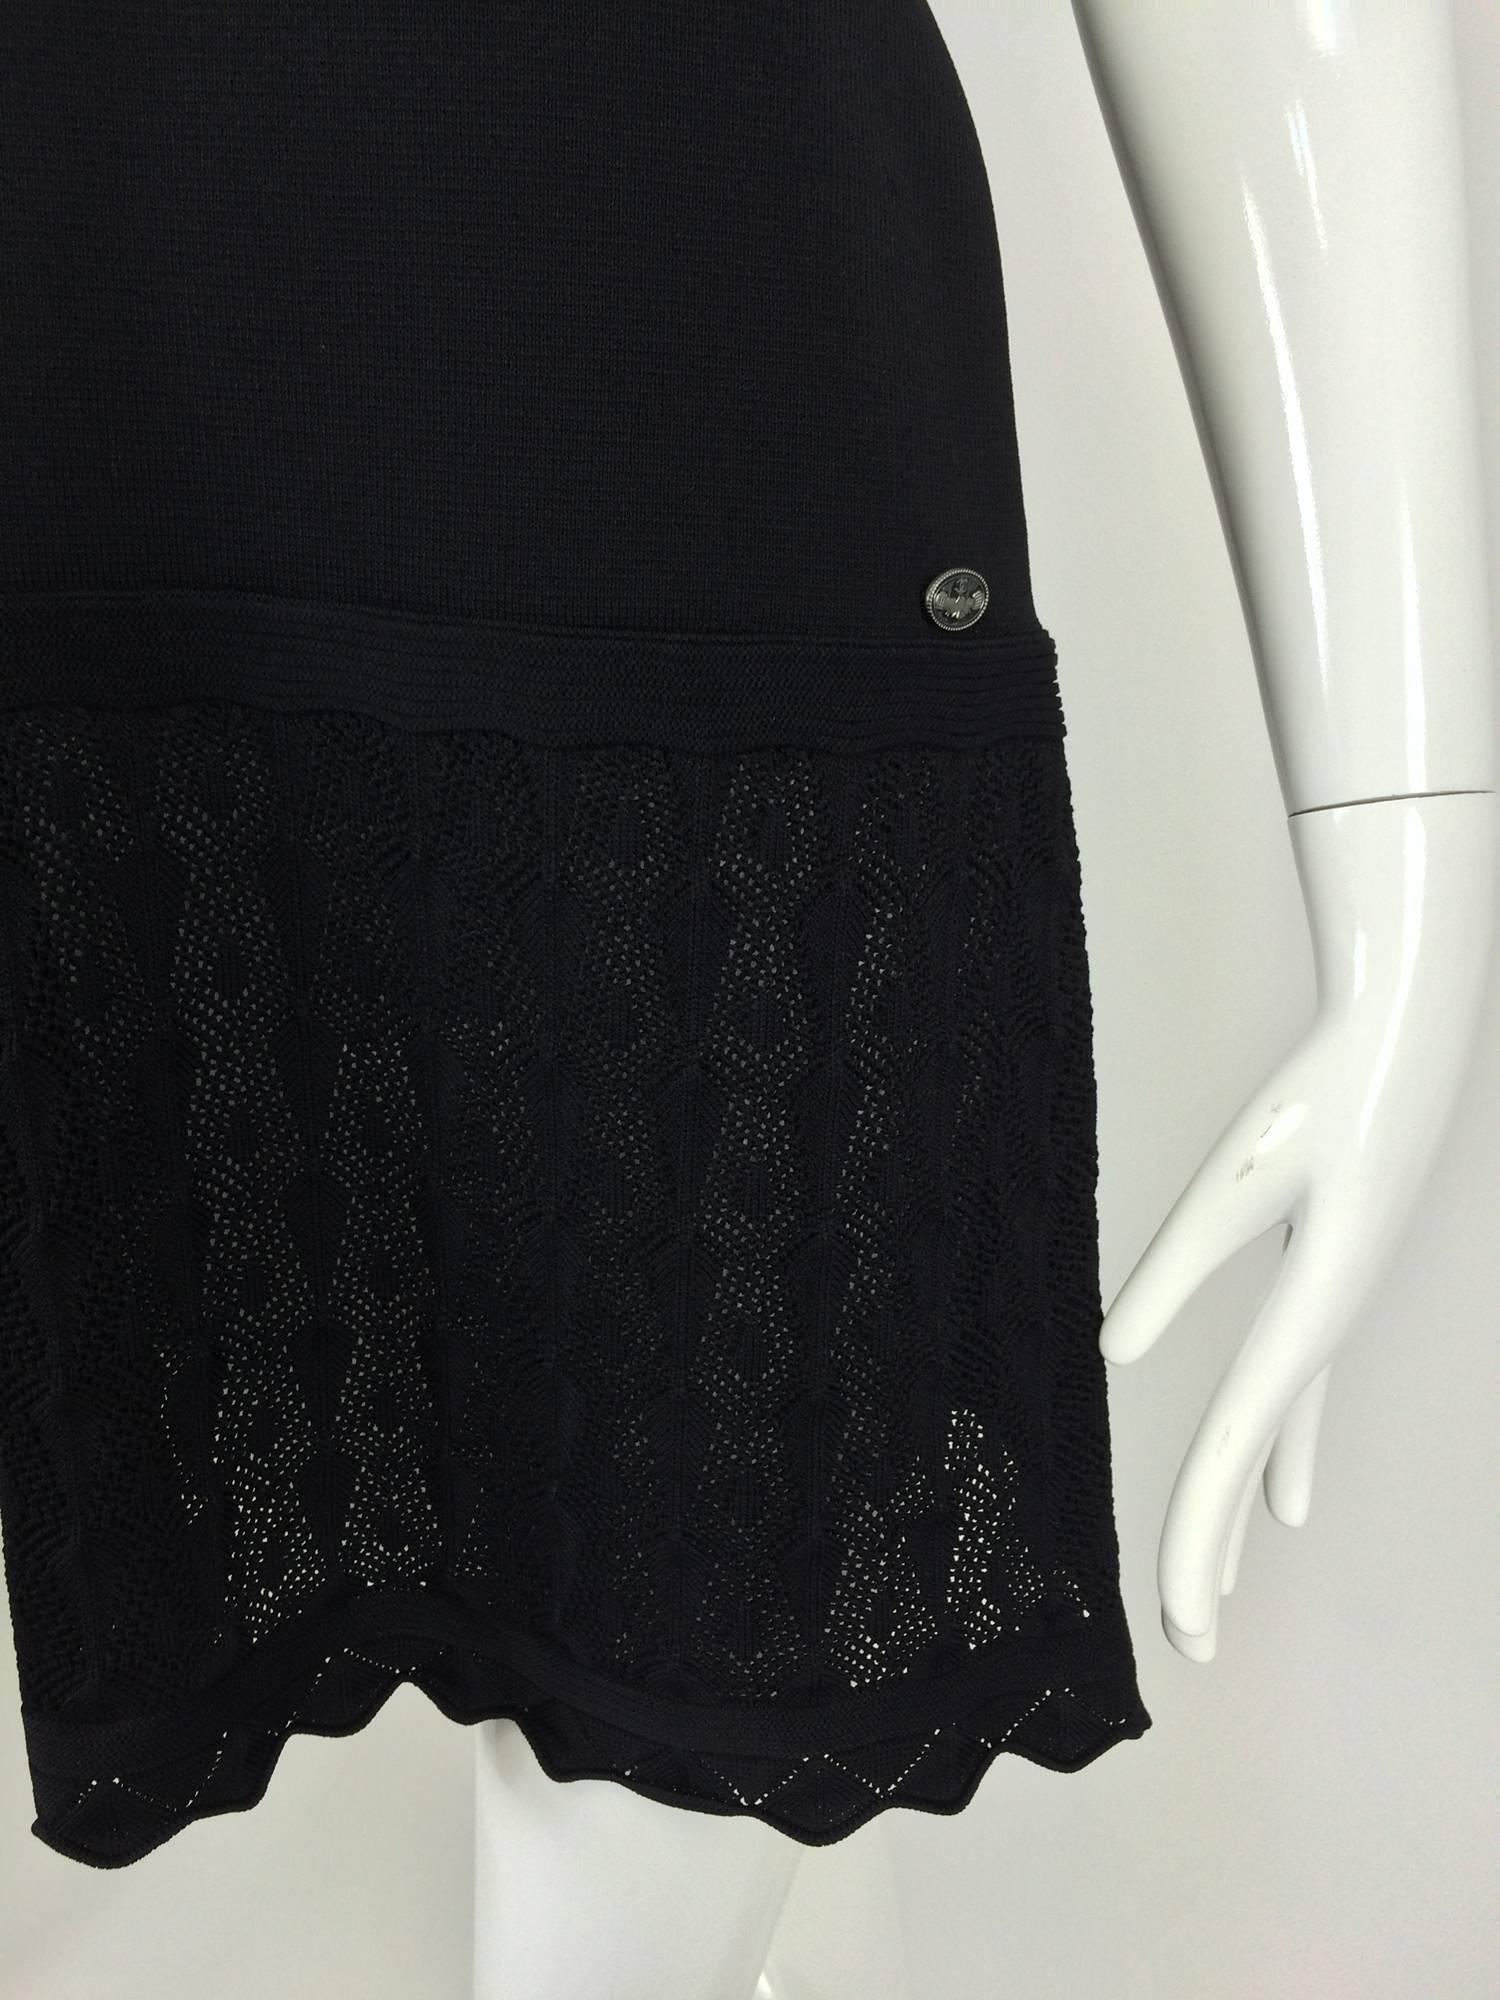 Chanel shoulder baring little black knit dress 2008 unworn 4